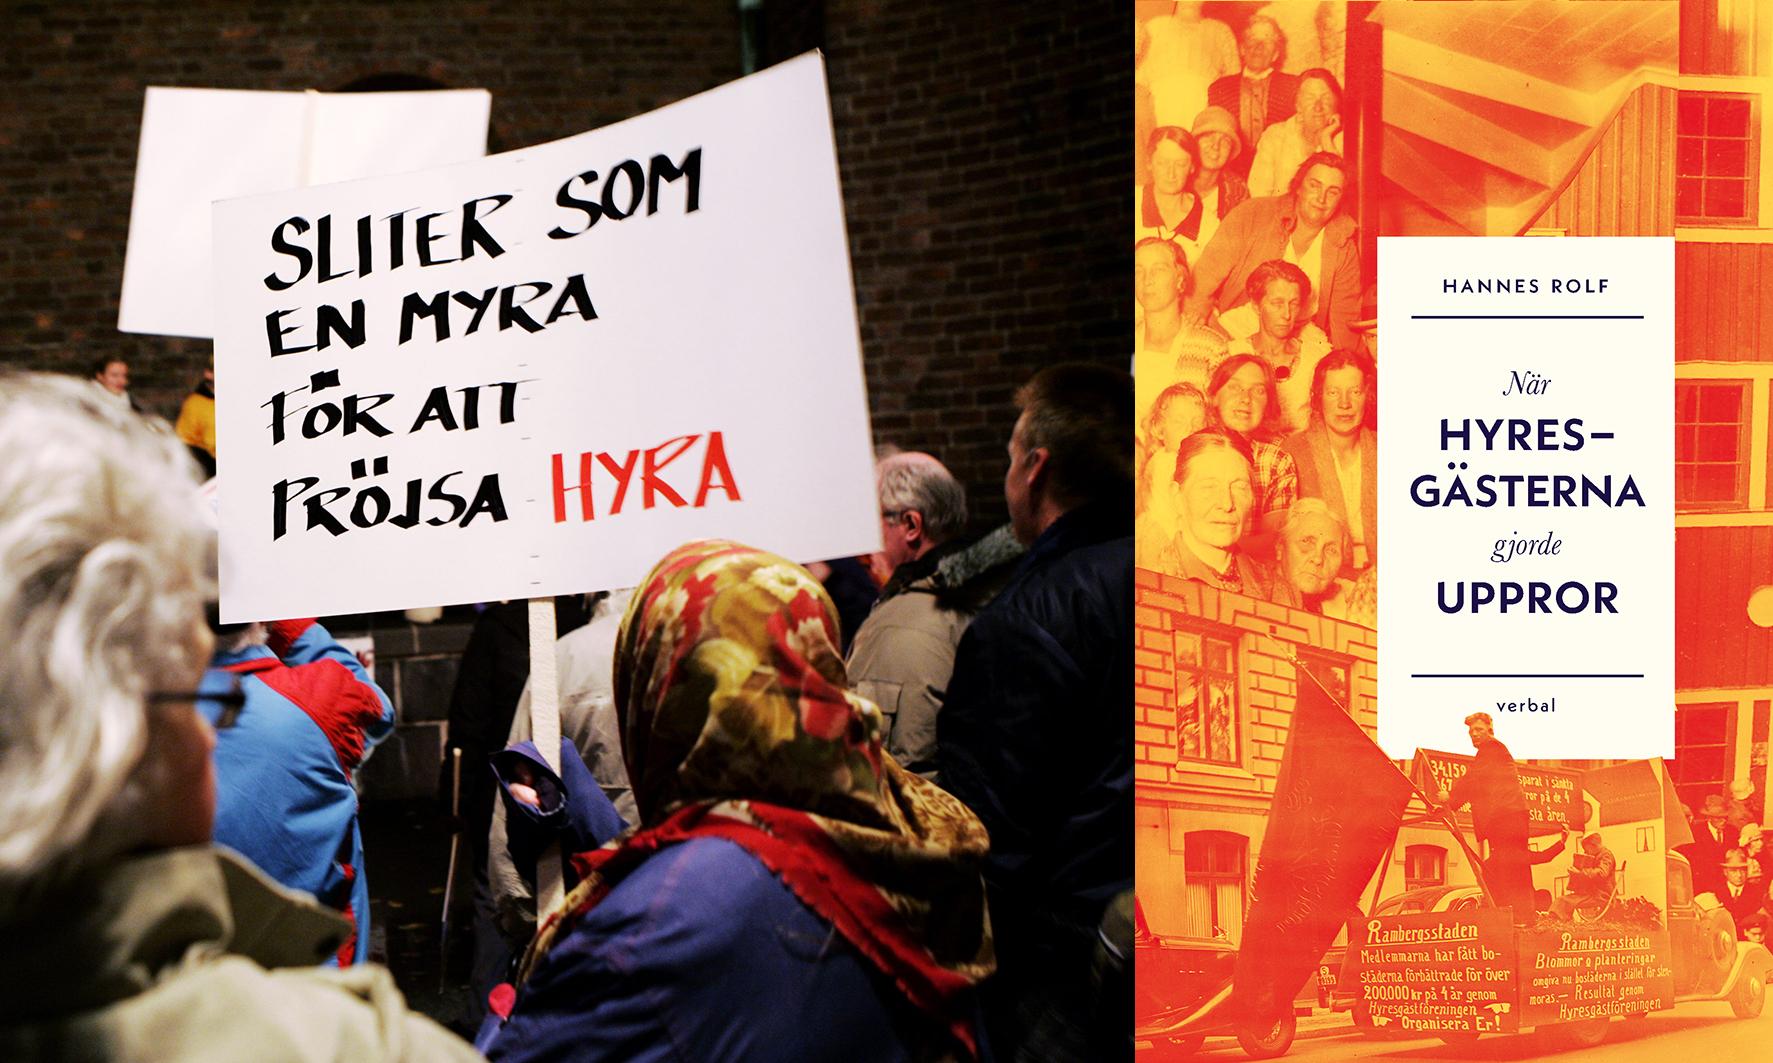 Demonstrant mot höjda hyror i Stockholm, 2005. ”När hyresgästerna gjorde uppror” handlar om den tidiga hyreskampens historia och den sociala bostadspolitikens framväxt. Mikael Nyberg recenserar.